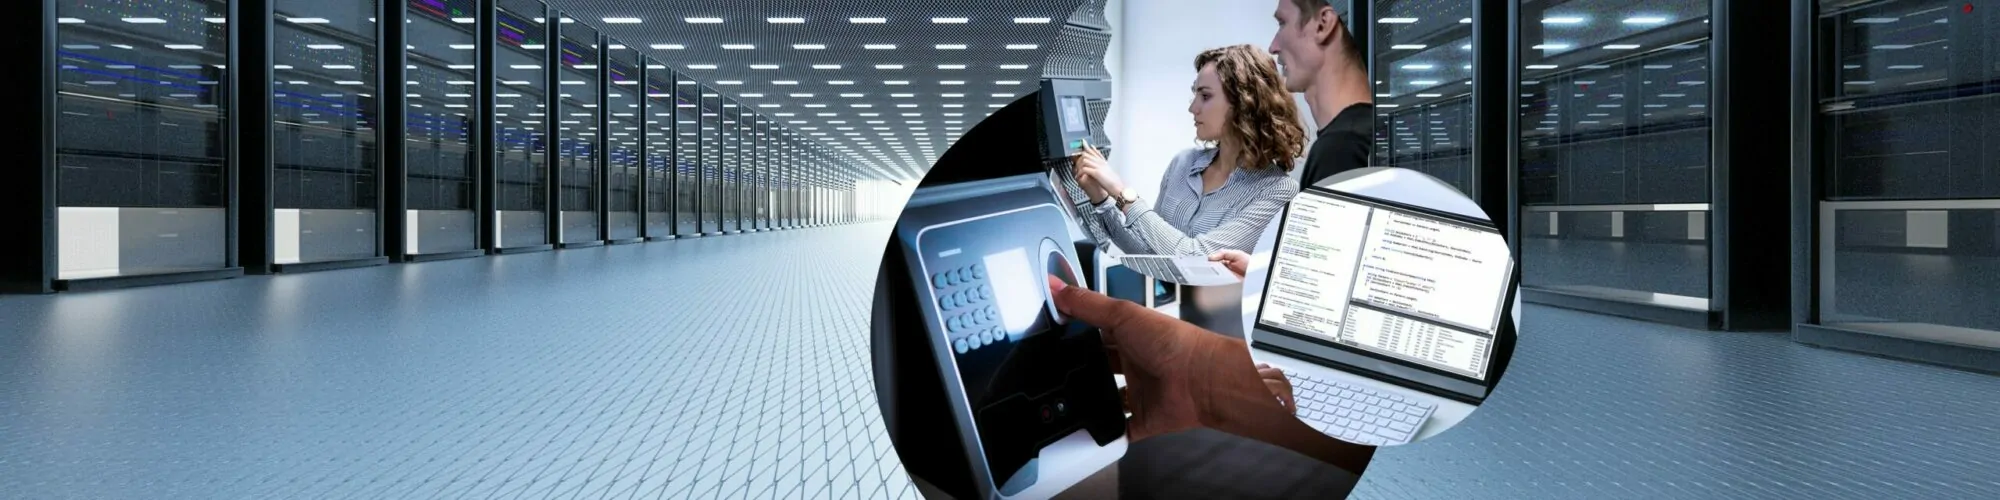 IT-Sicherheit und Datenschutz werden im Bild durch ein Rechenzentrum, zwei Frauen vor einer digitalen Zugangssperre sowie durch ein Laptop thematisiert.